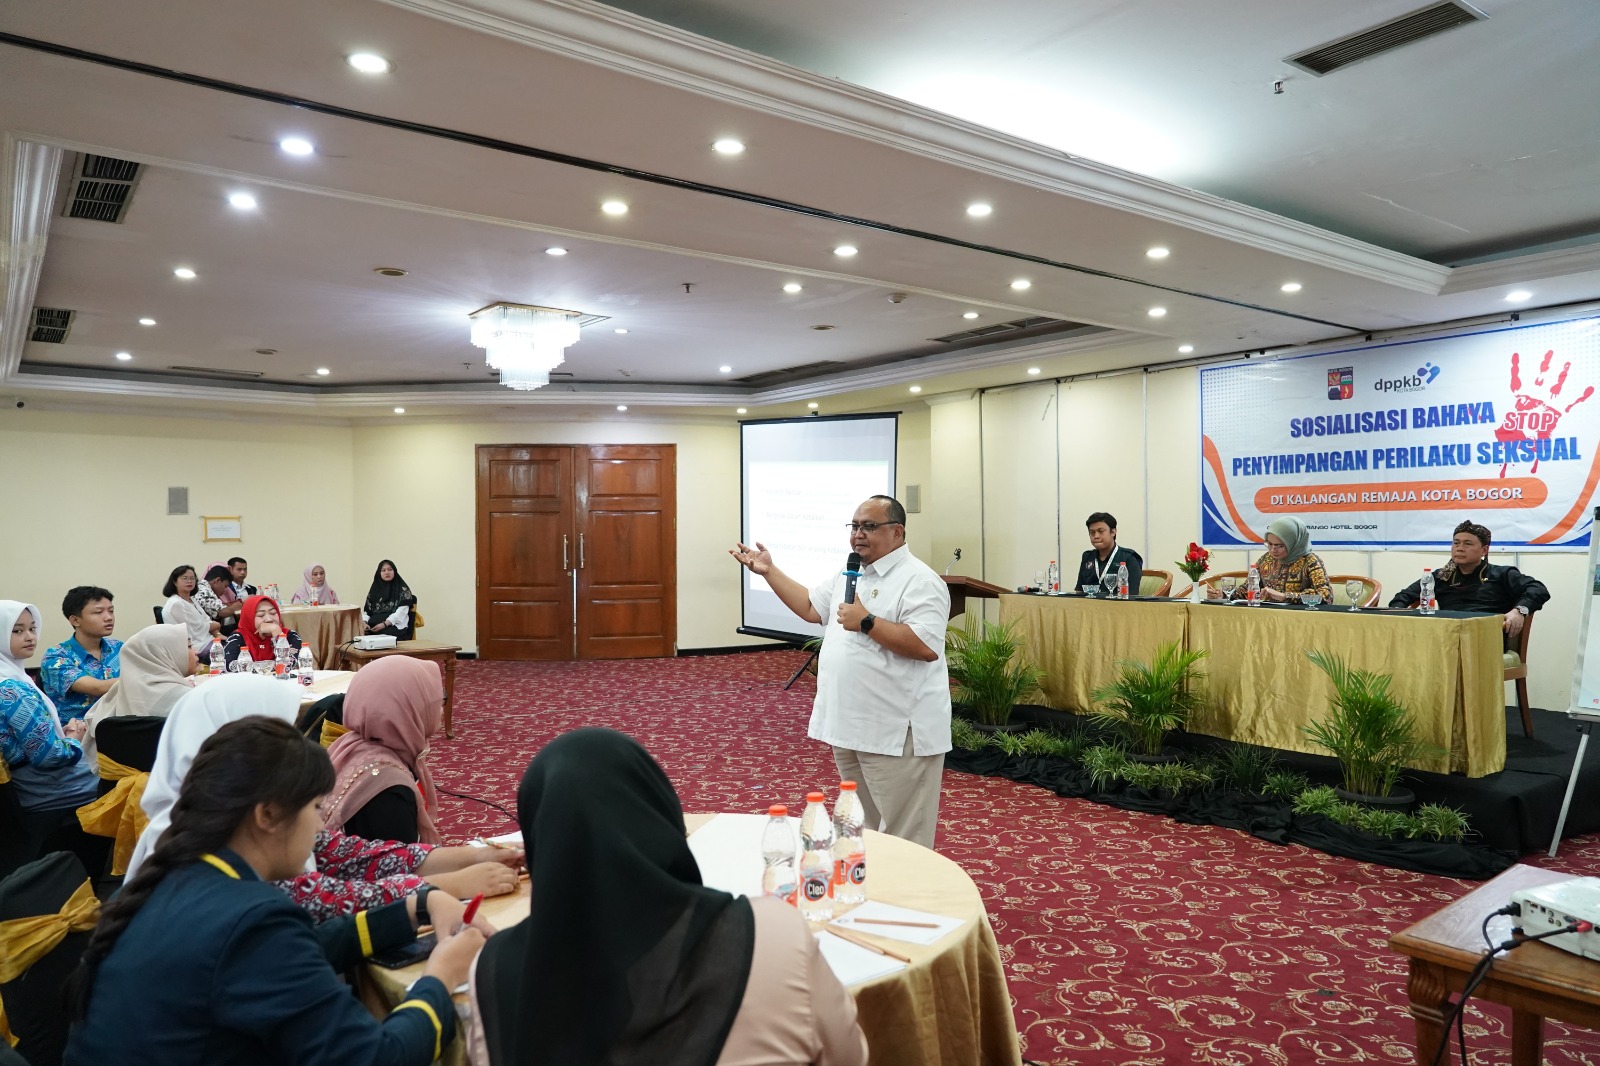 Ketua DPRD Kota Bogor, Arang Trisnanto saat menjadi pembicara di kegiatan sosialisasi bahaya penyimpangan seksual. (Yudha Prananda / Jabar Ekspres)